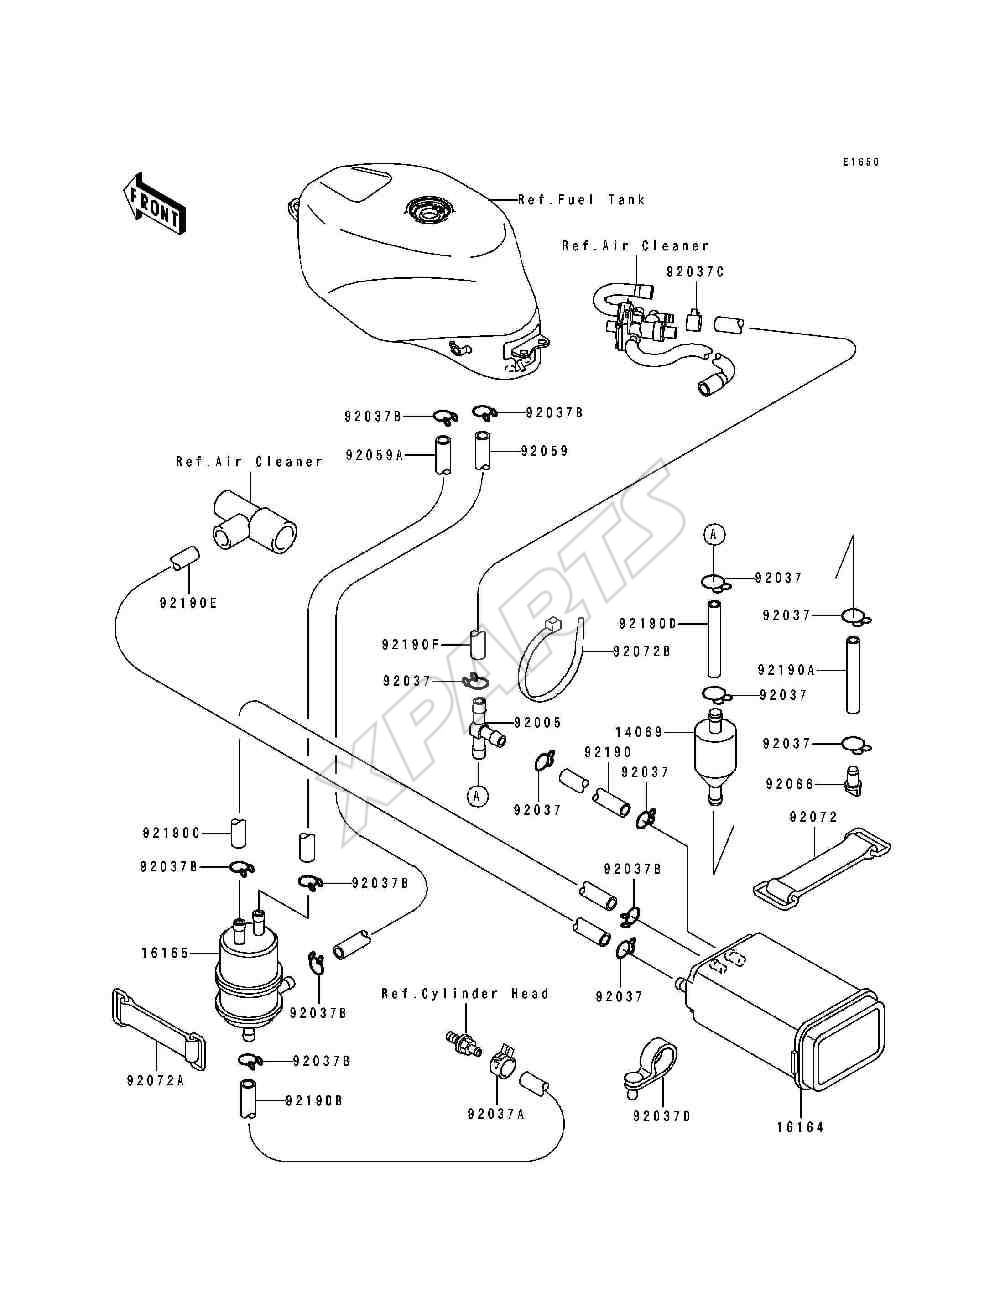 Wiring Manual PDF: 2004 Kawasaki Z1000 Wiring Diagram